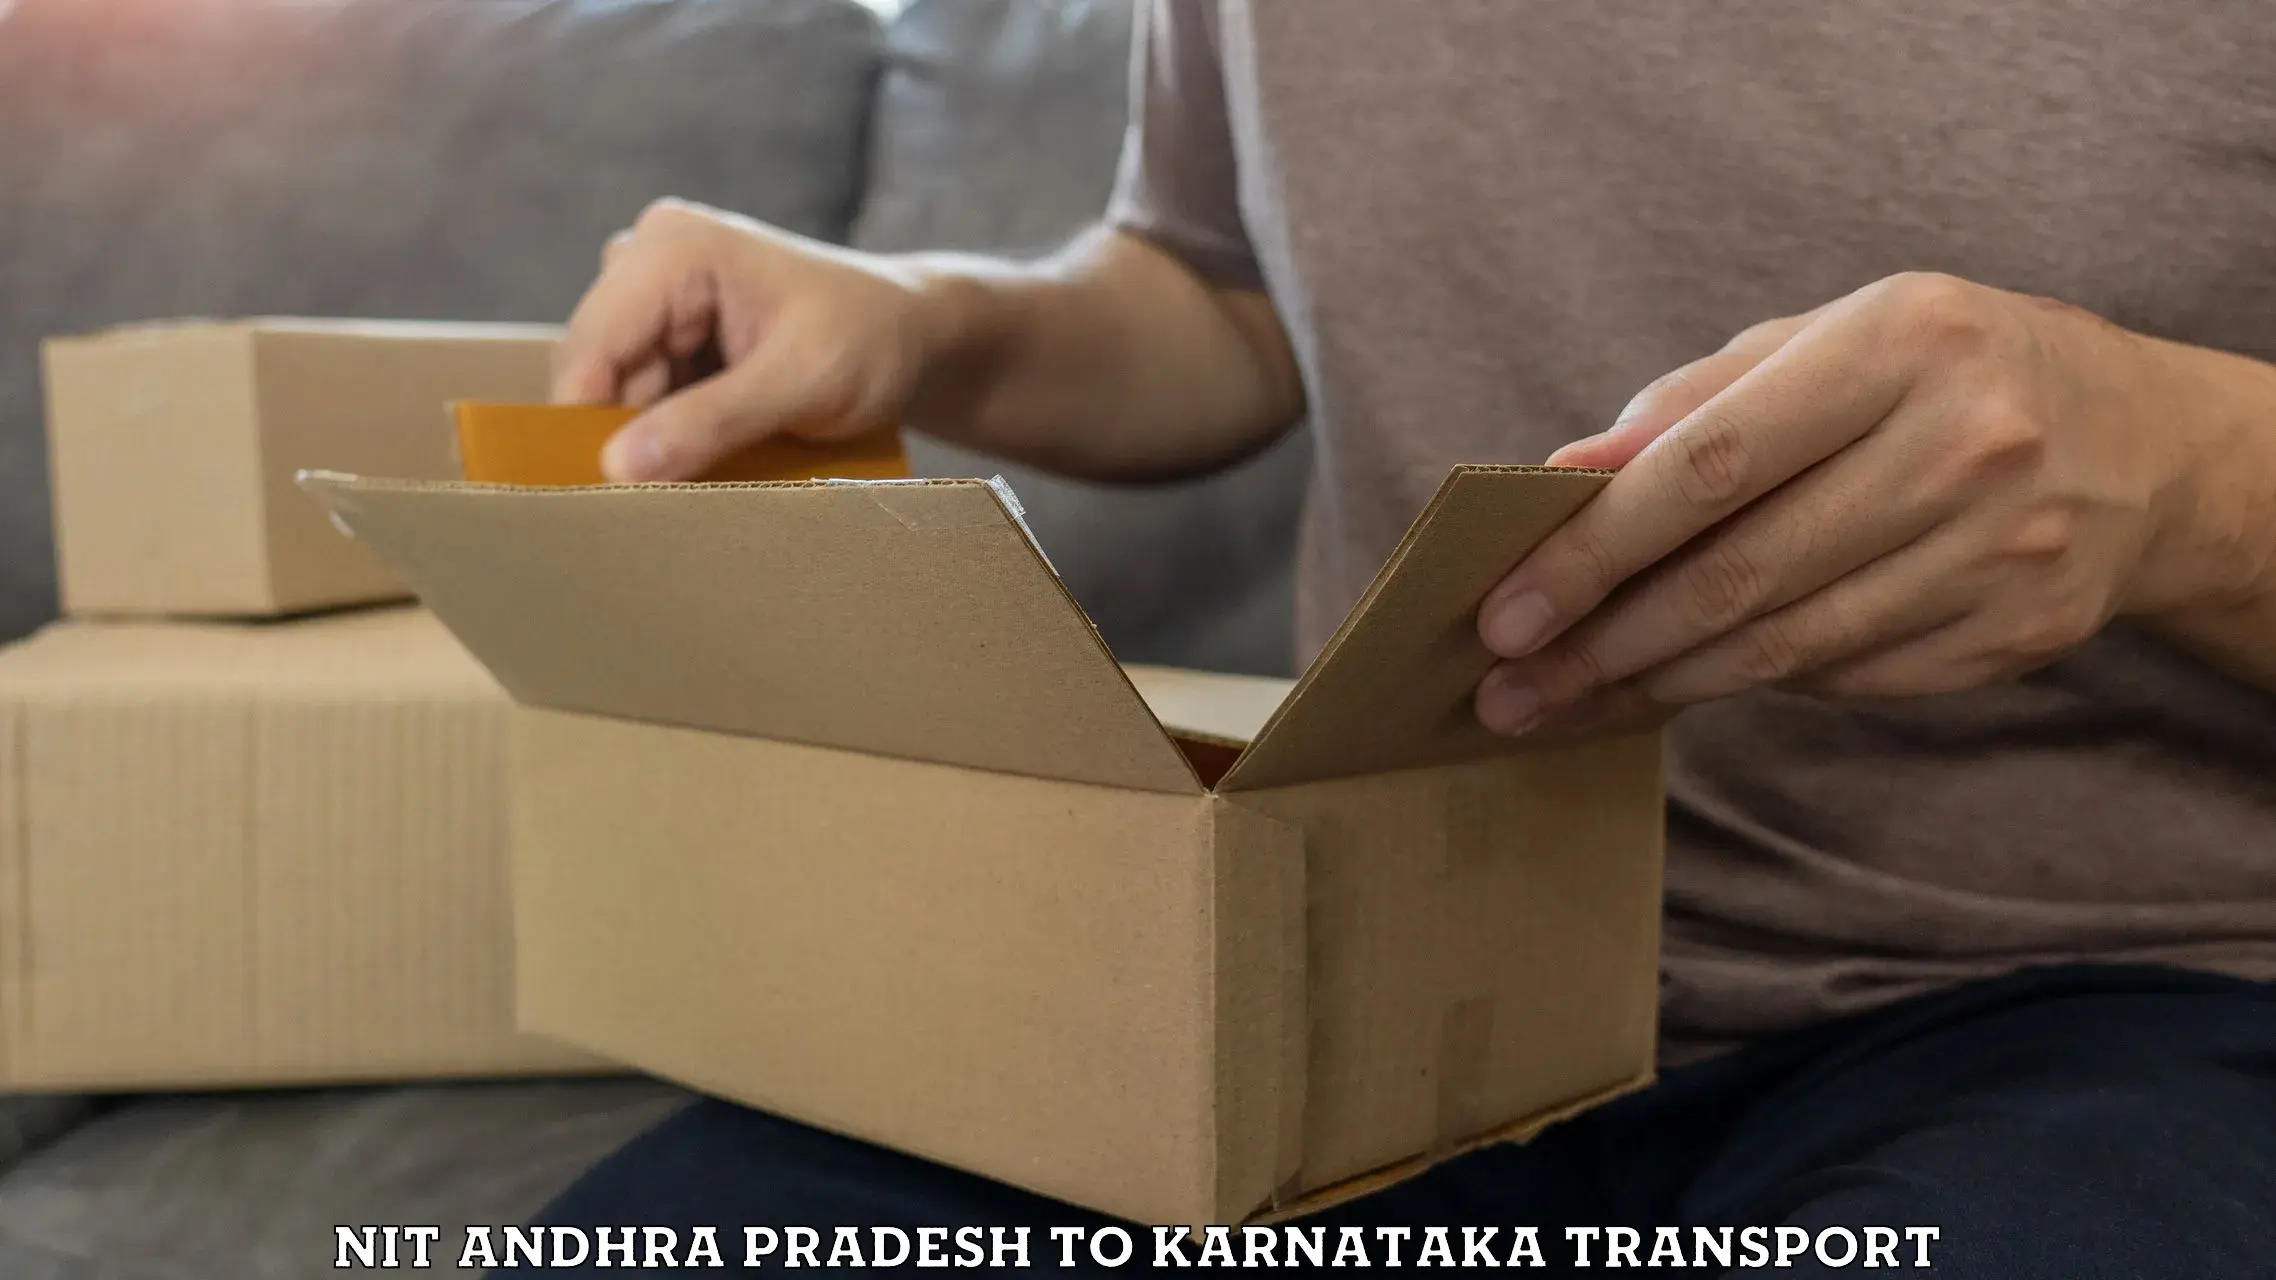 Express transport services NIT Andhra Pradesh to Karnataka